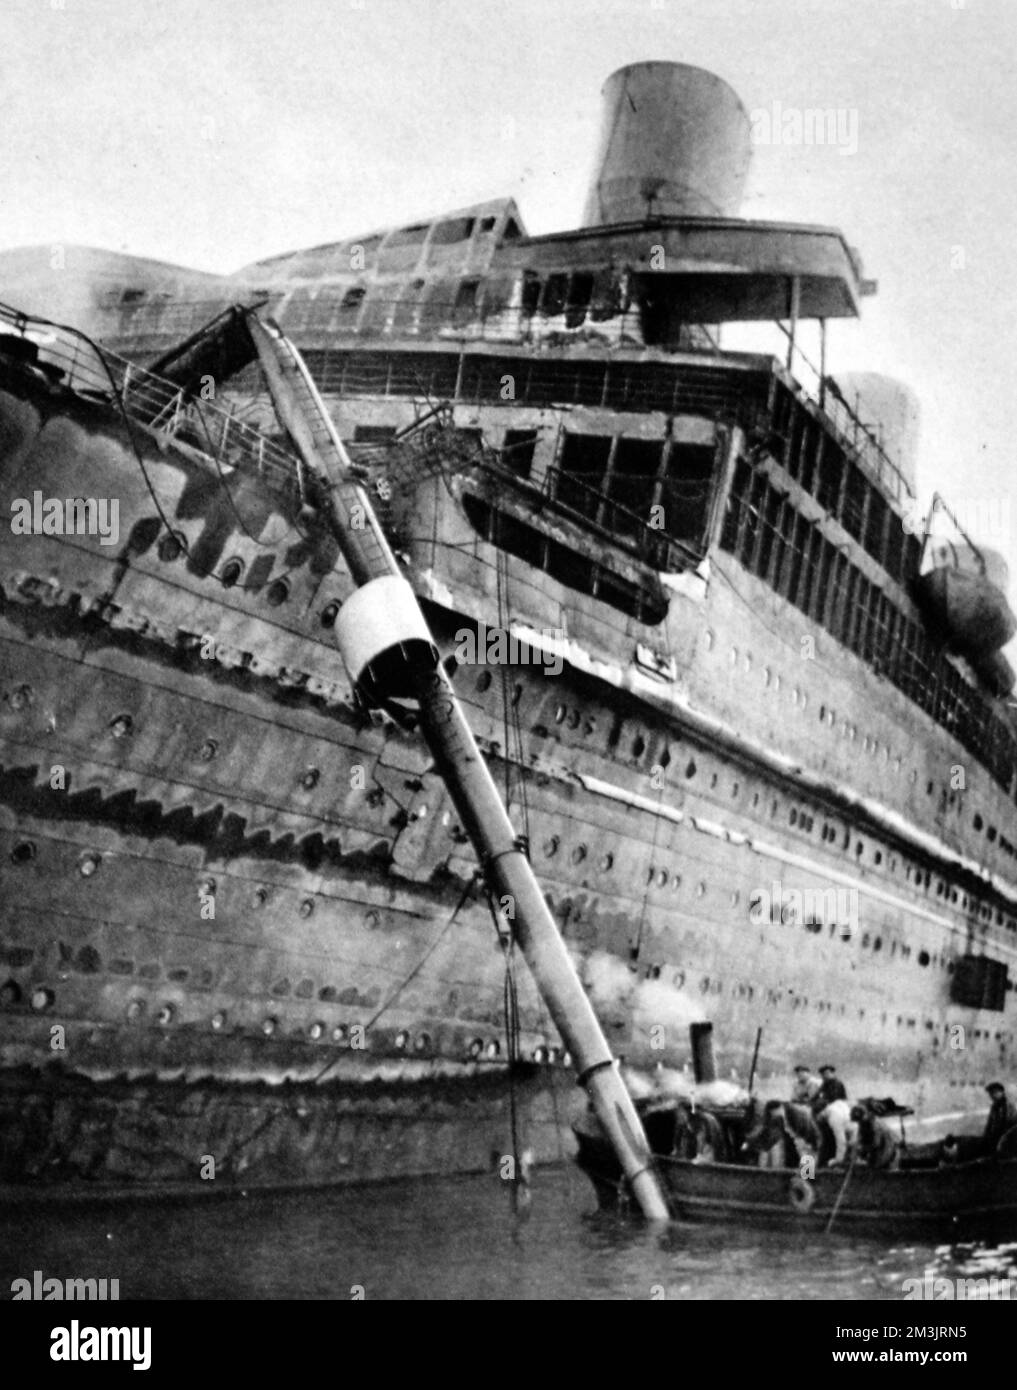 La linea bruciata, l'Atlantique portato con successo nel porto di Cherbourg. L'incendio scoppiò nelle prime ore del 4th gennaio 1933, alle 6am:00 fu dato l'ordine di abbandono della nave. La nave non aveva passeggeri a bordo, solo l'equipaggio, molti sono stati prelevati nel vaporizzatore britannico, Ford Castle. Una scialuppa di salvataggio è stata gettata in mare, annegando alcuni degli occupanti. Per ore il liner che bruciò si è spostato, il calore formidabile ha impedito ai mestieri di asservimento di avvicinarsi. Alla fine una nave francese ha cartolarizzato una linea e l'ha portata a Cherbourg. Data: 1933 Foto Stock